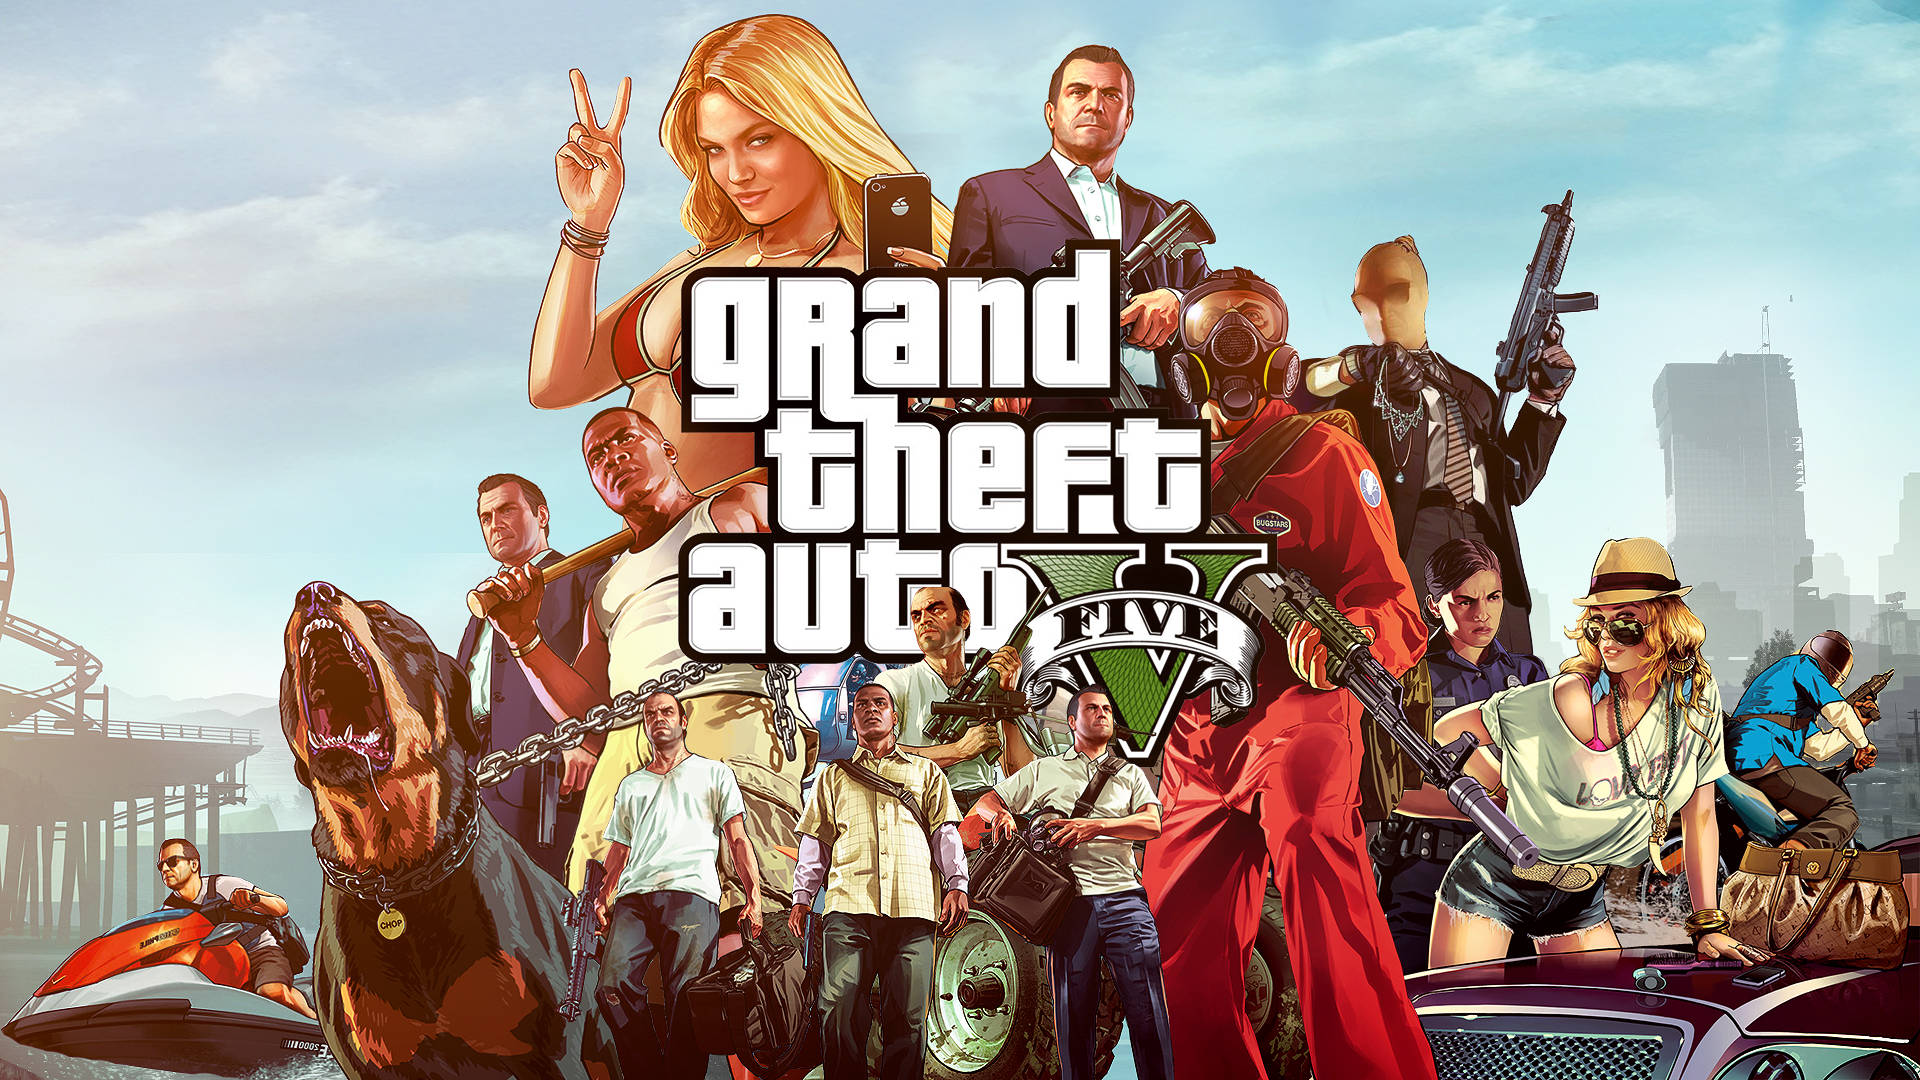 Grand Theft Auto V All Casts Wallpaper